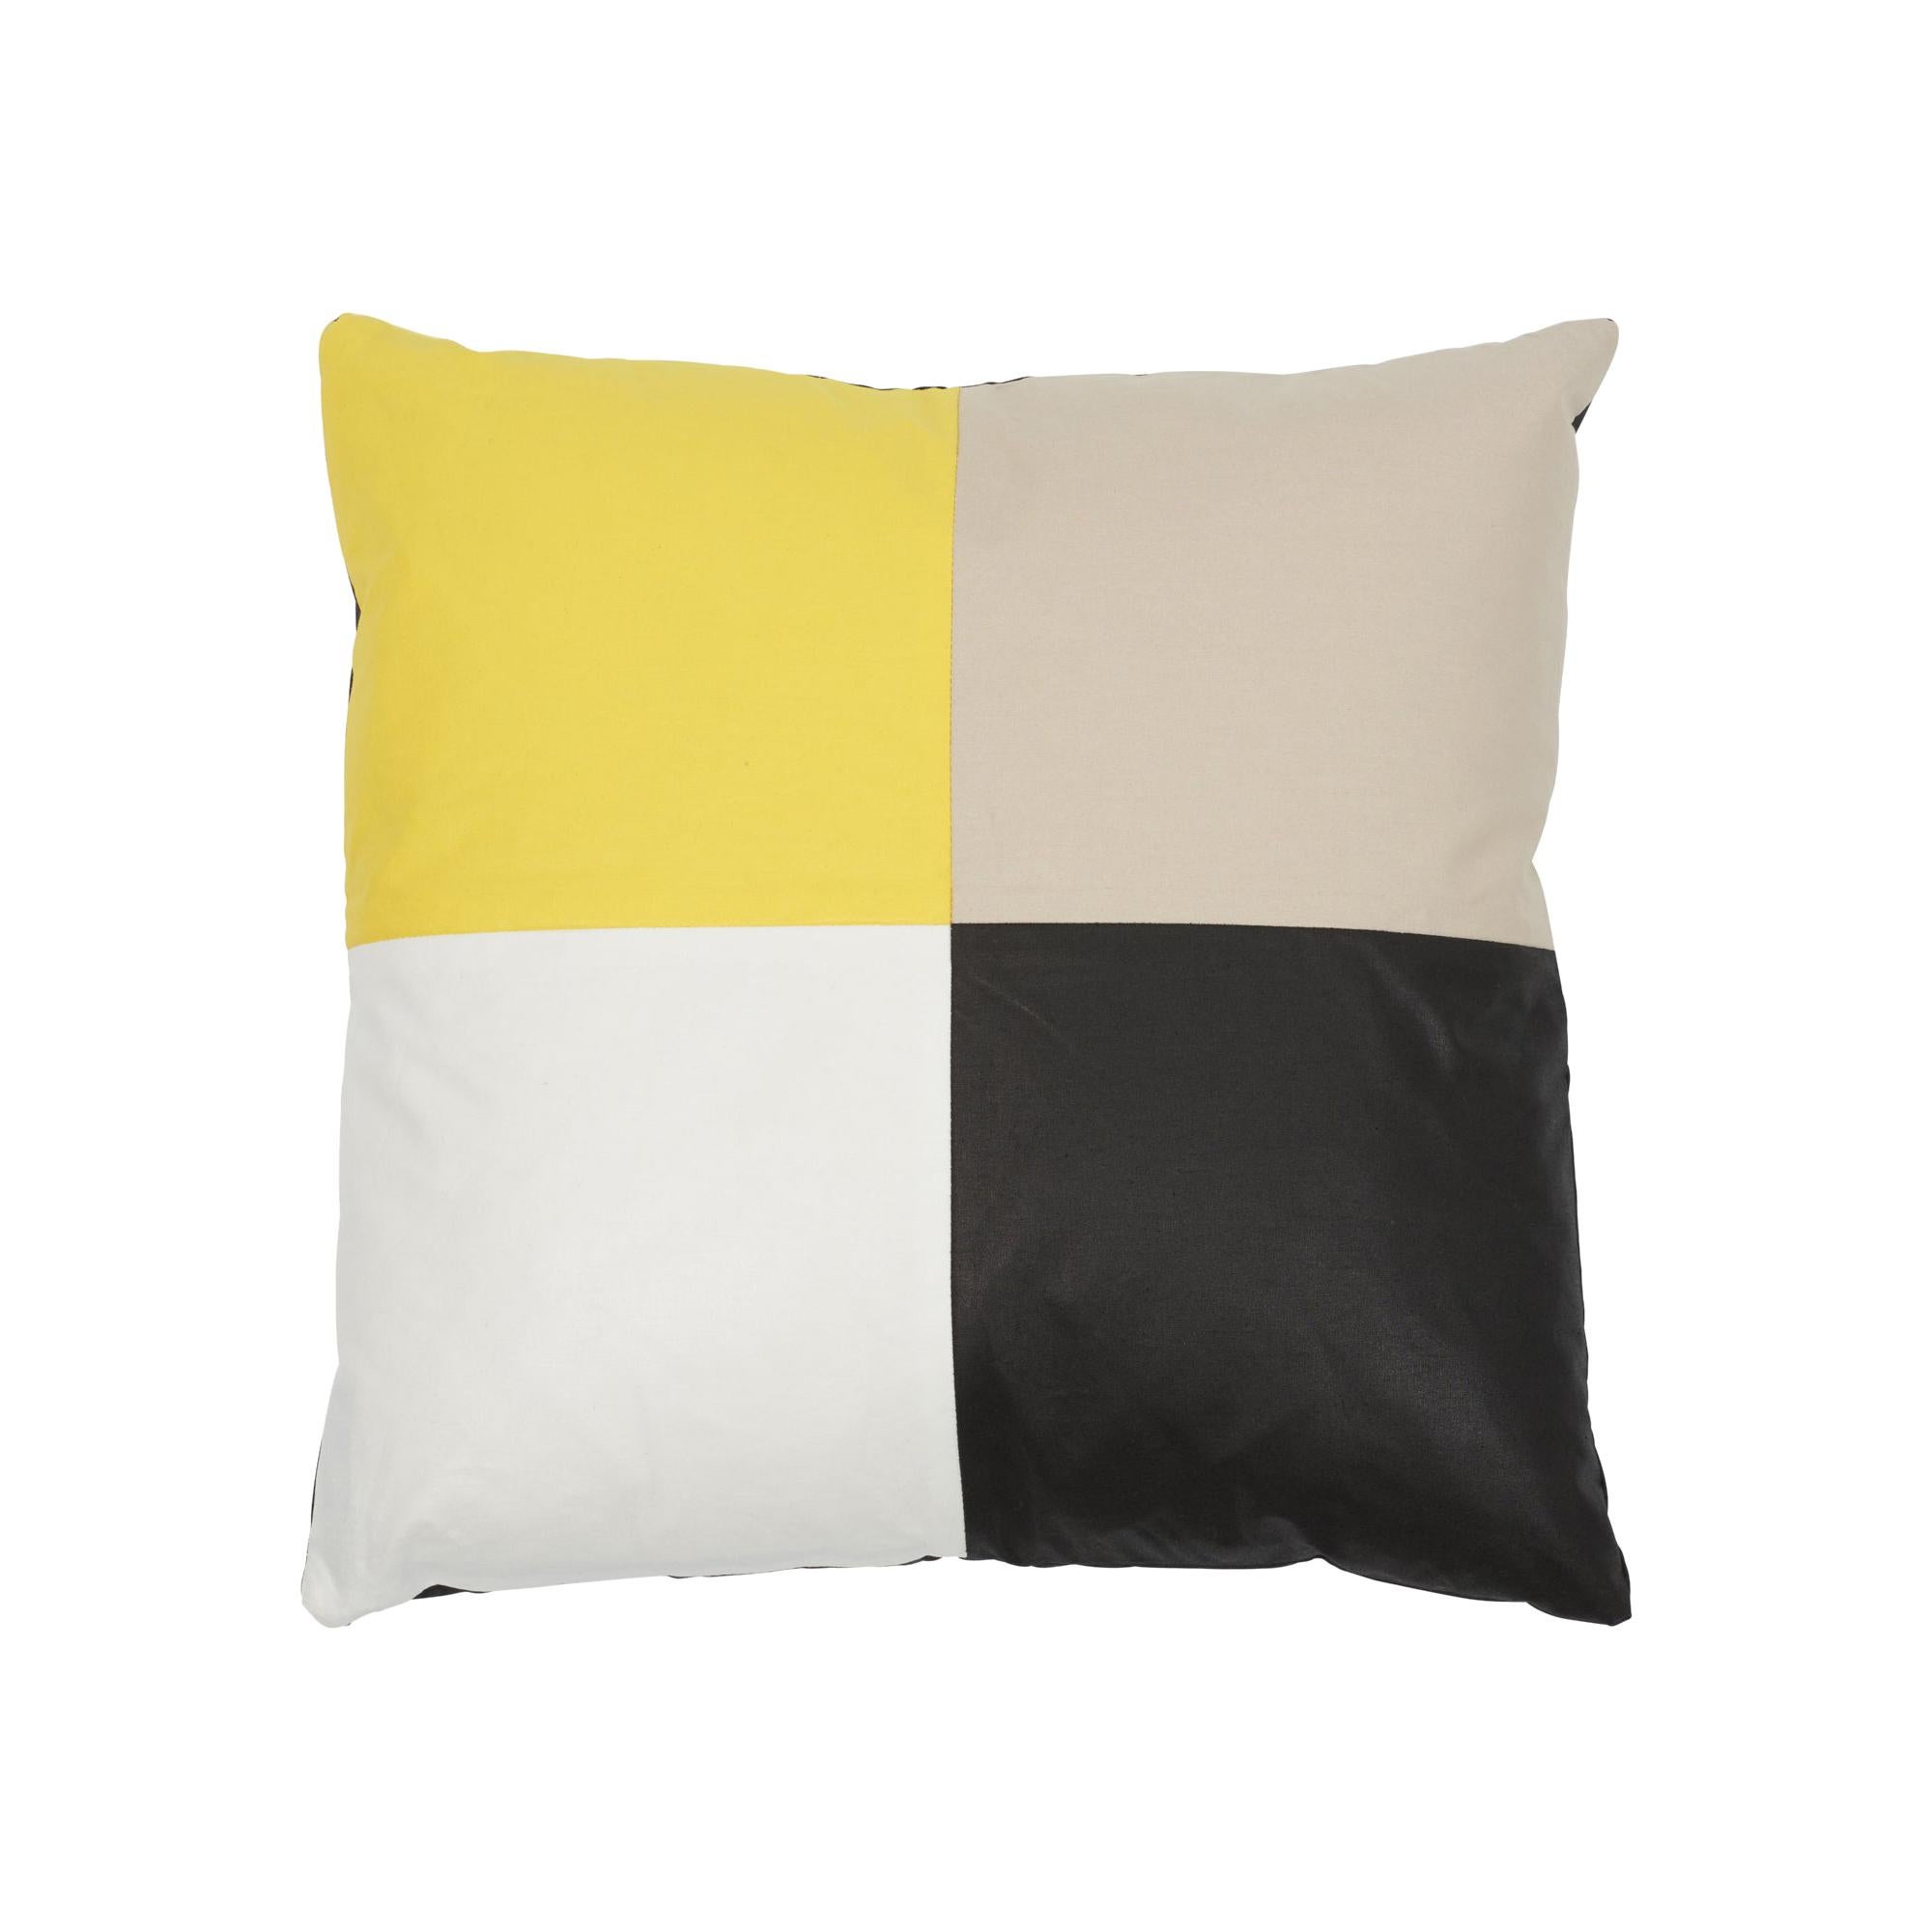 Schumacher Cecil Cotton Chintz Black Yellow Stone White Pillow